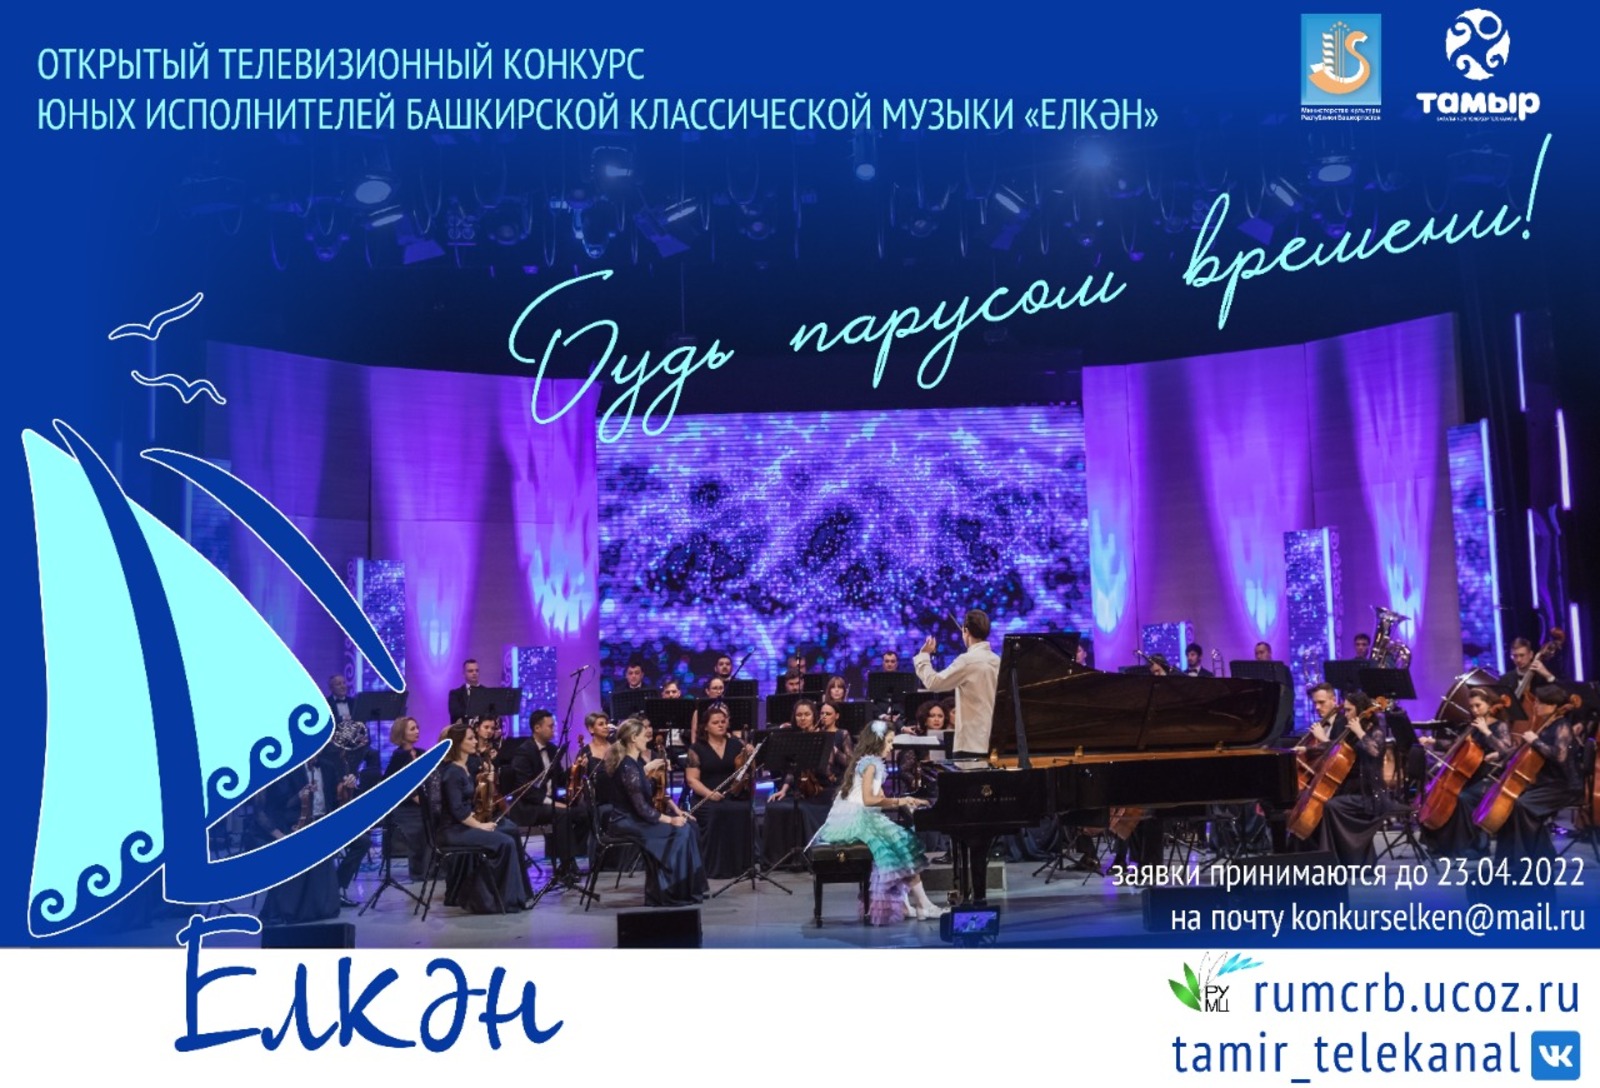 Начался приём заявок на конкурс юных исполнителей башкирской классической музыки «Елкән»